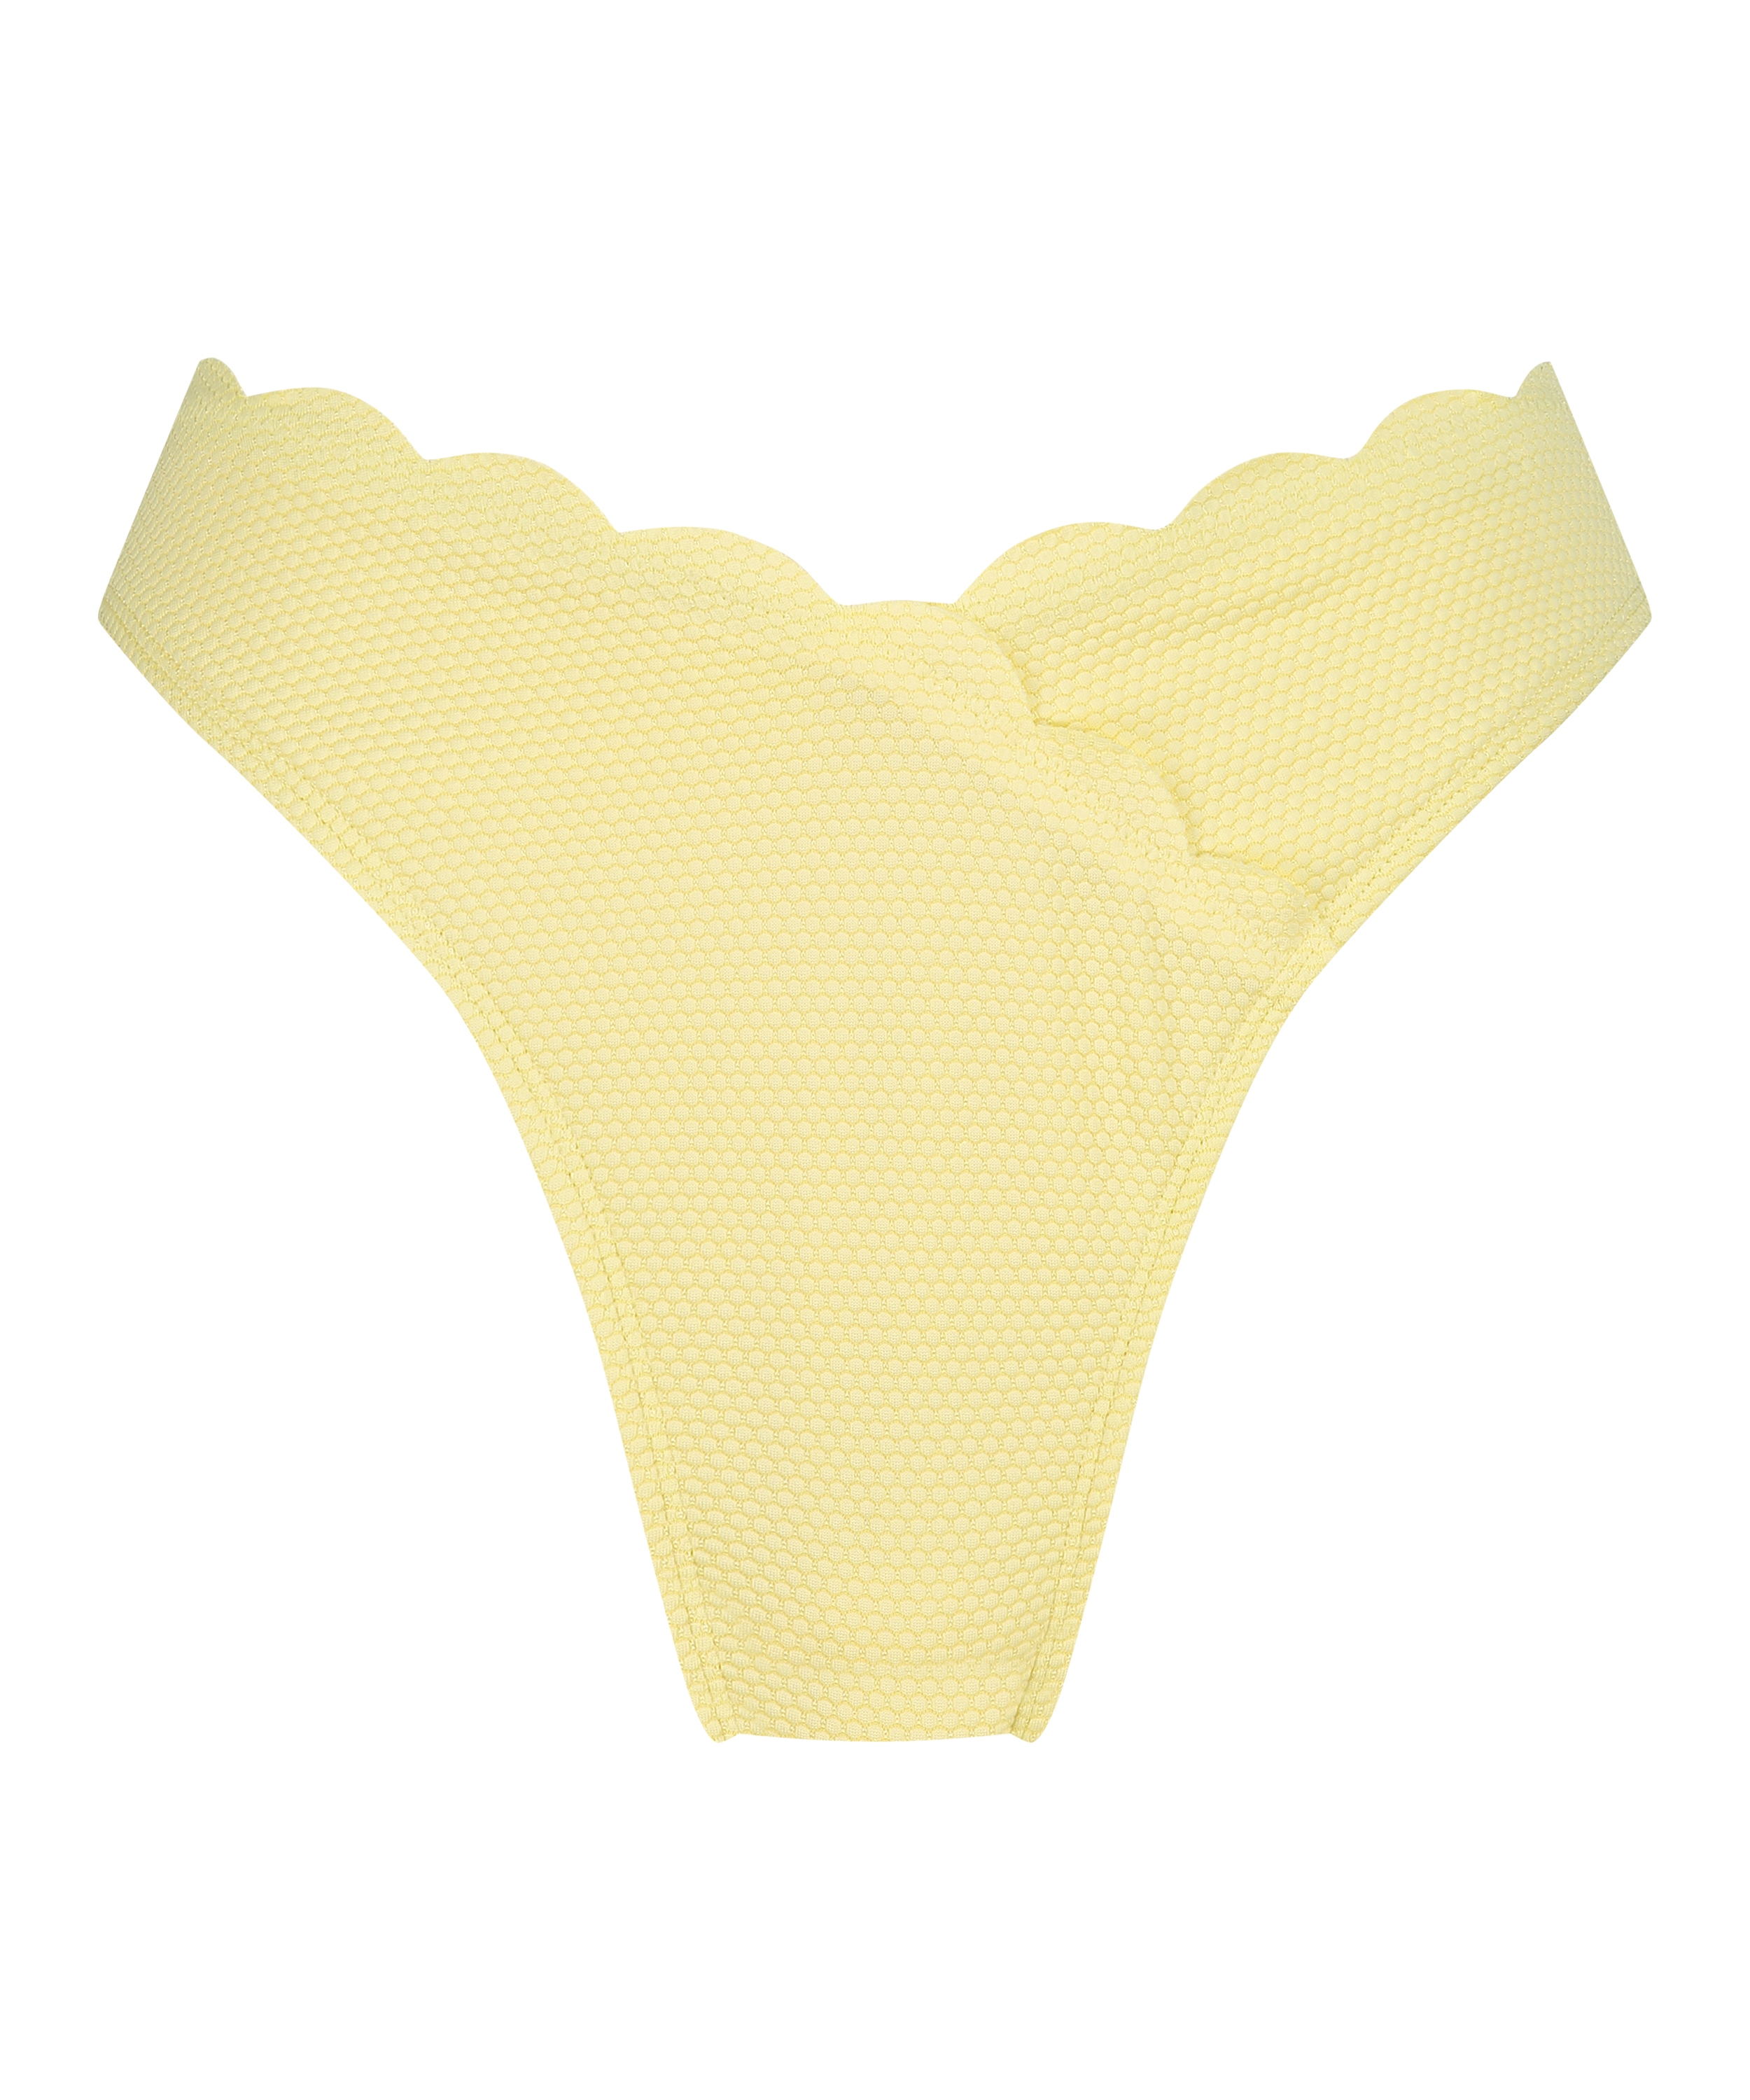 Scallop High-Leg Bikini Bottoms, Yellow, main